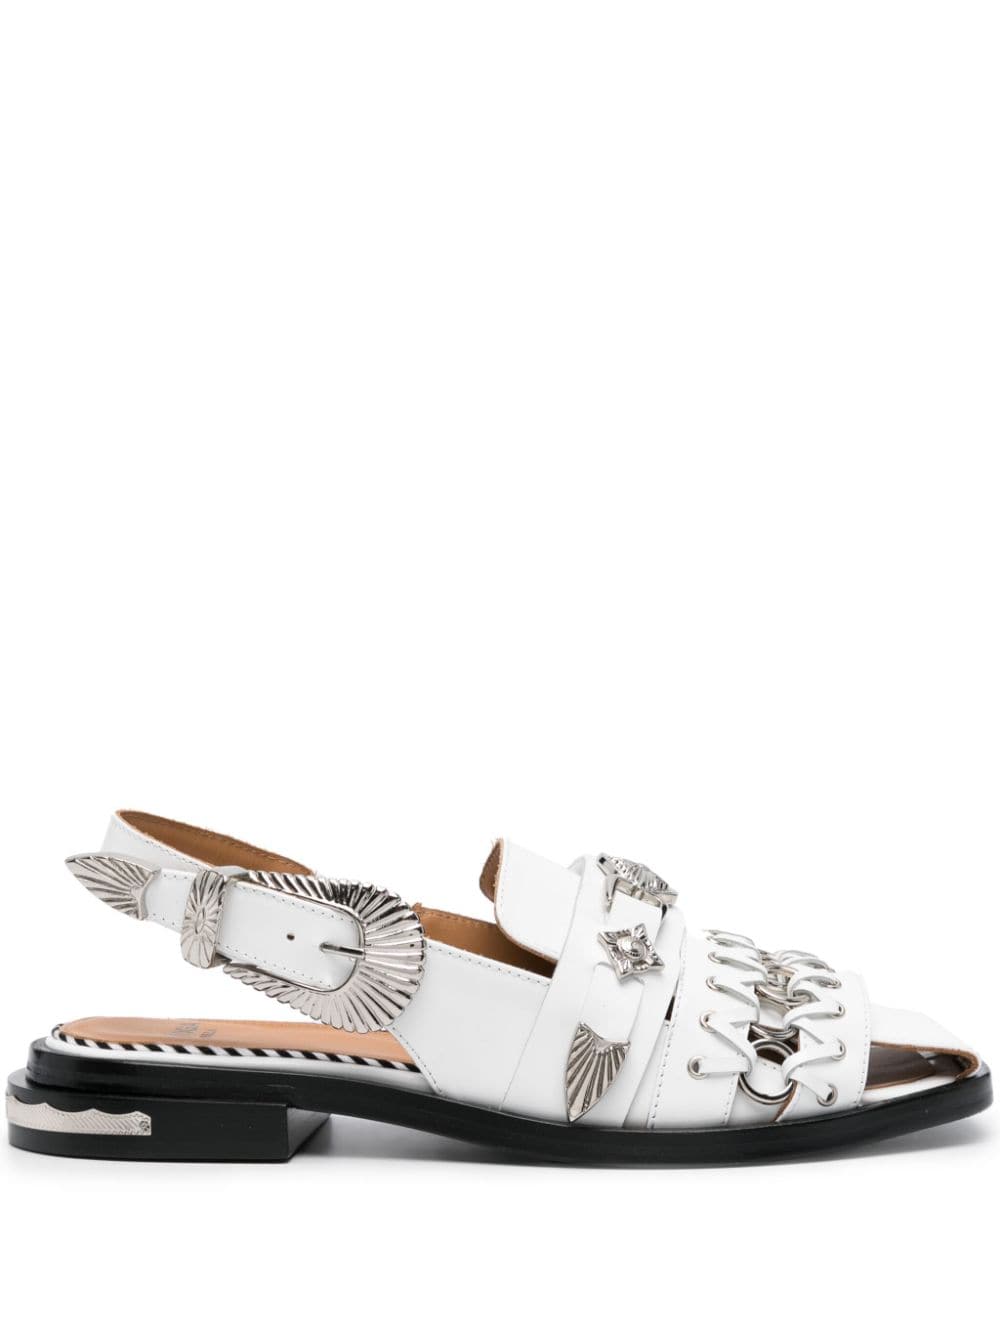 Toga Pulla embellished slingback sandals - White von Toga Pulla